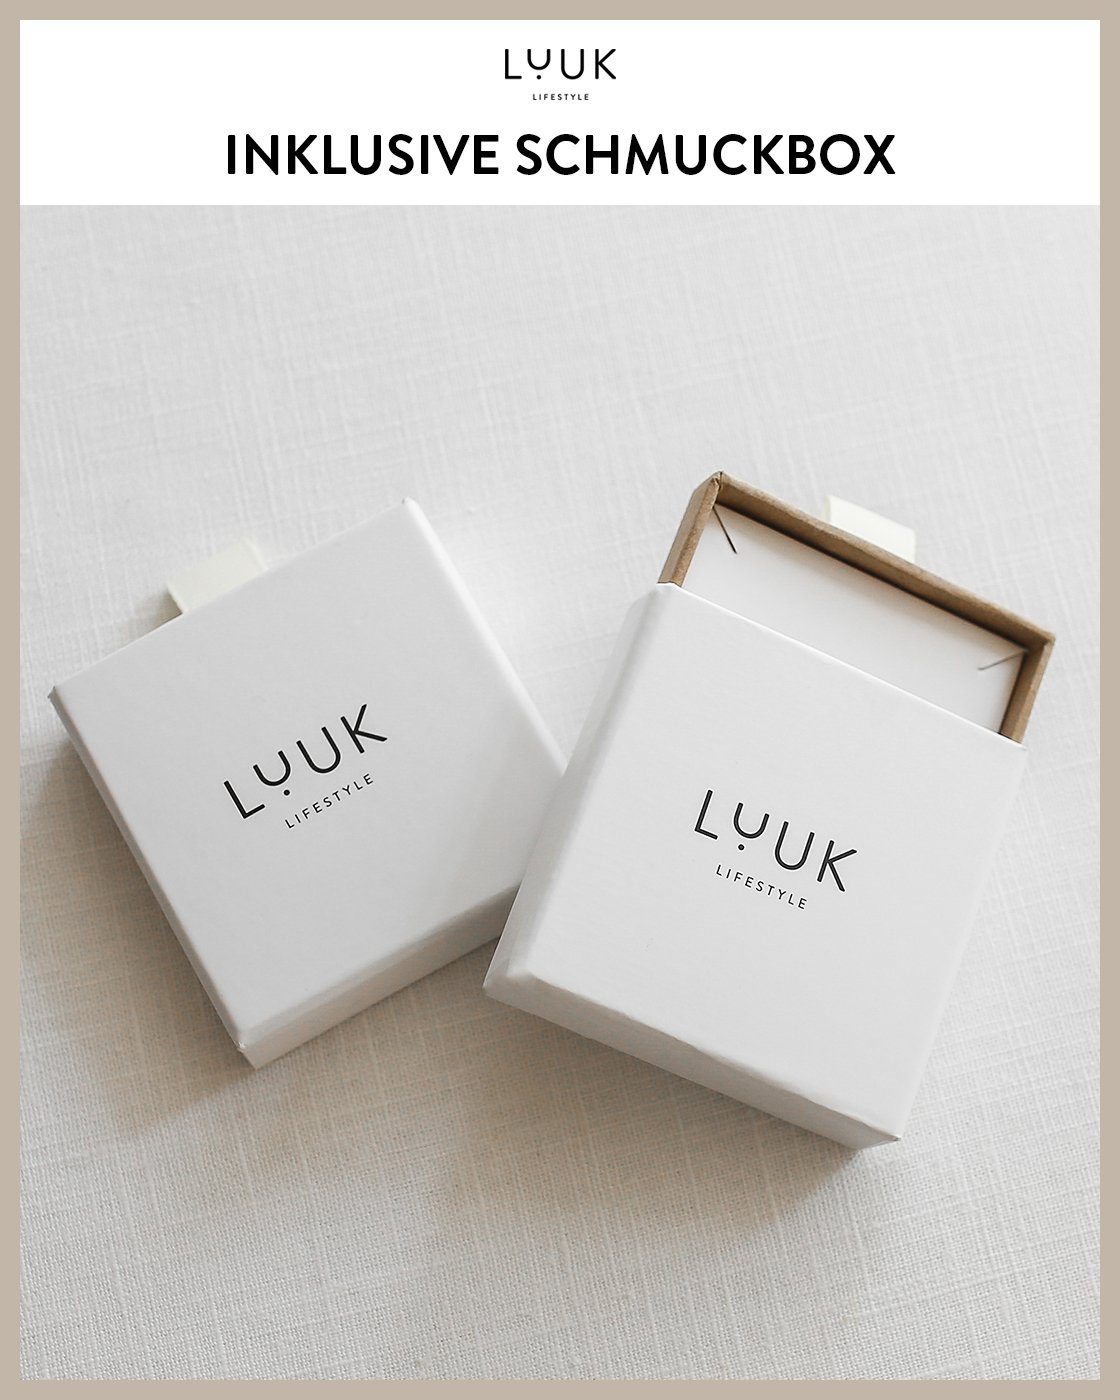 LIFESTYLE alltagstauglich, Ohrstecker LUUK Schmuckbox hautverträglich, Paar Gold modernes Blatt, inklusive schöner Design, wasserfest &